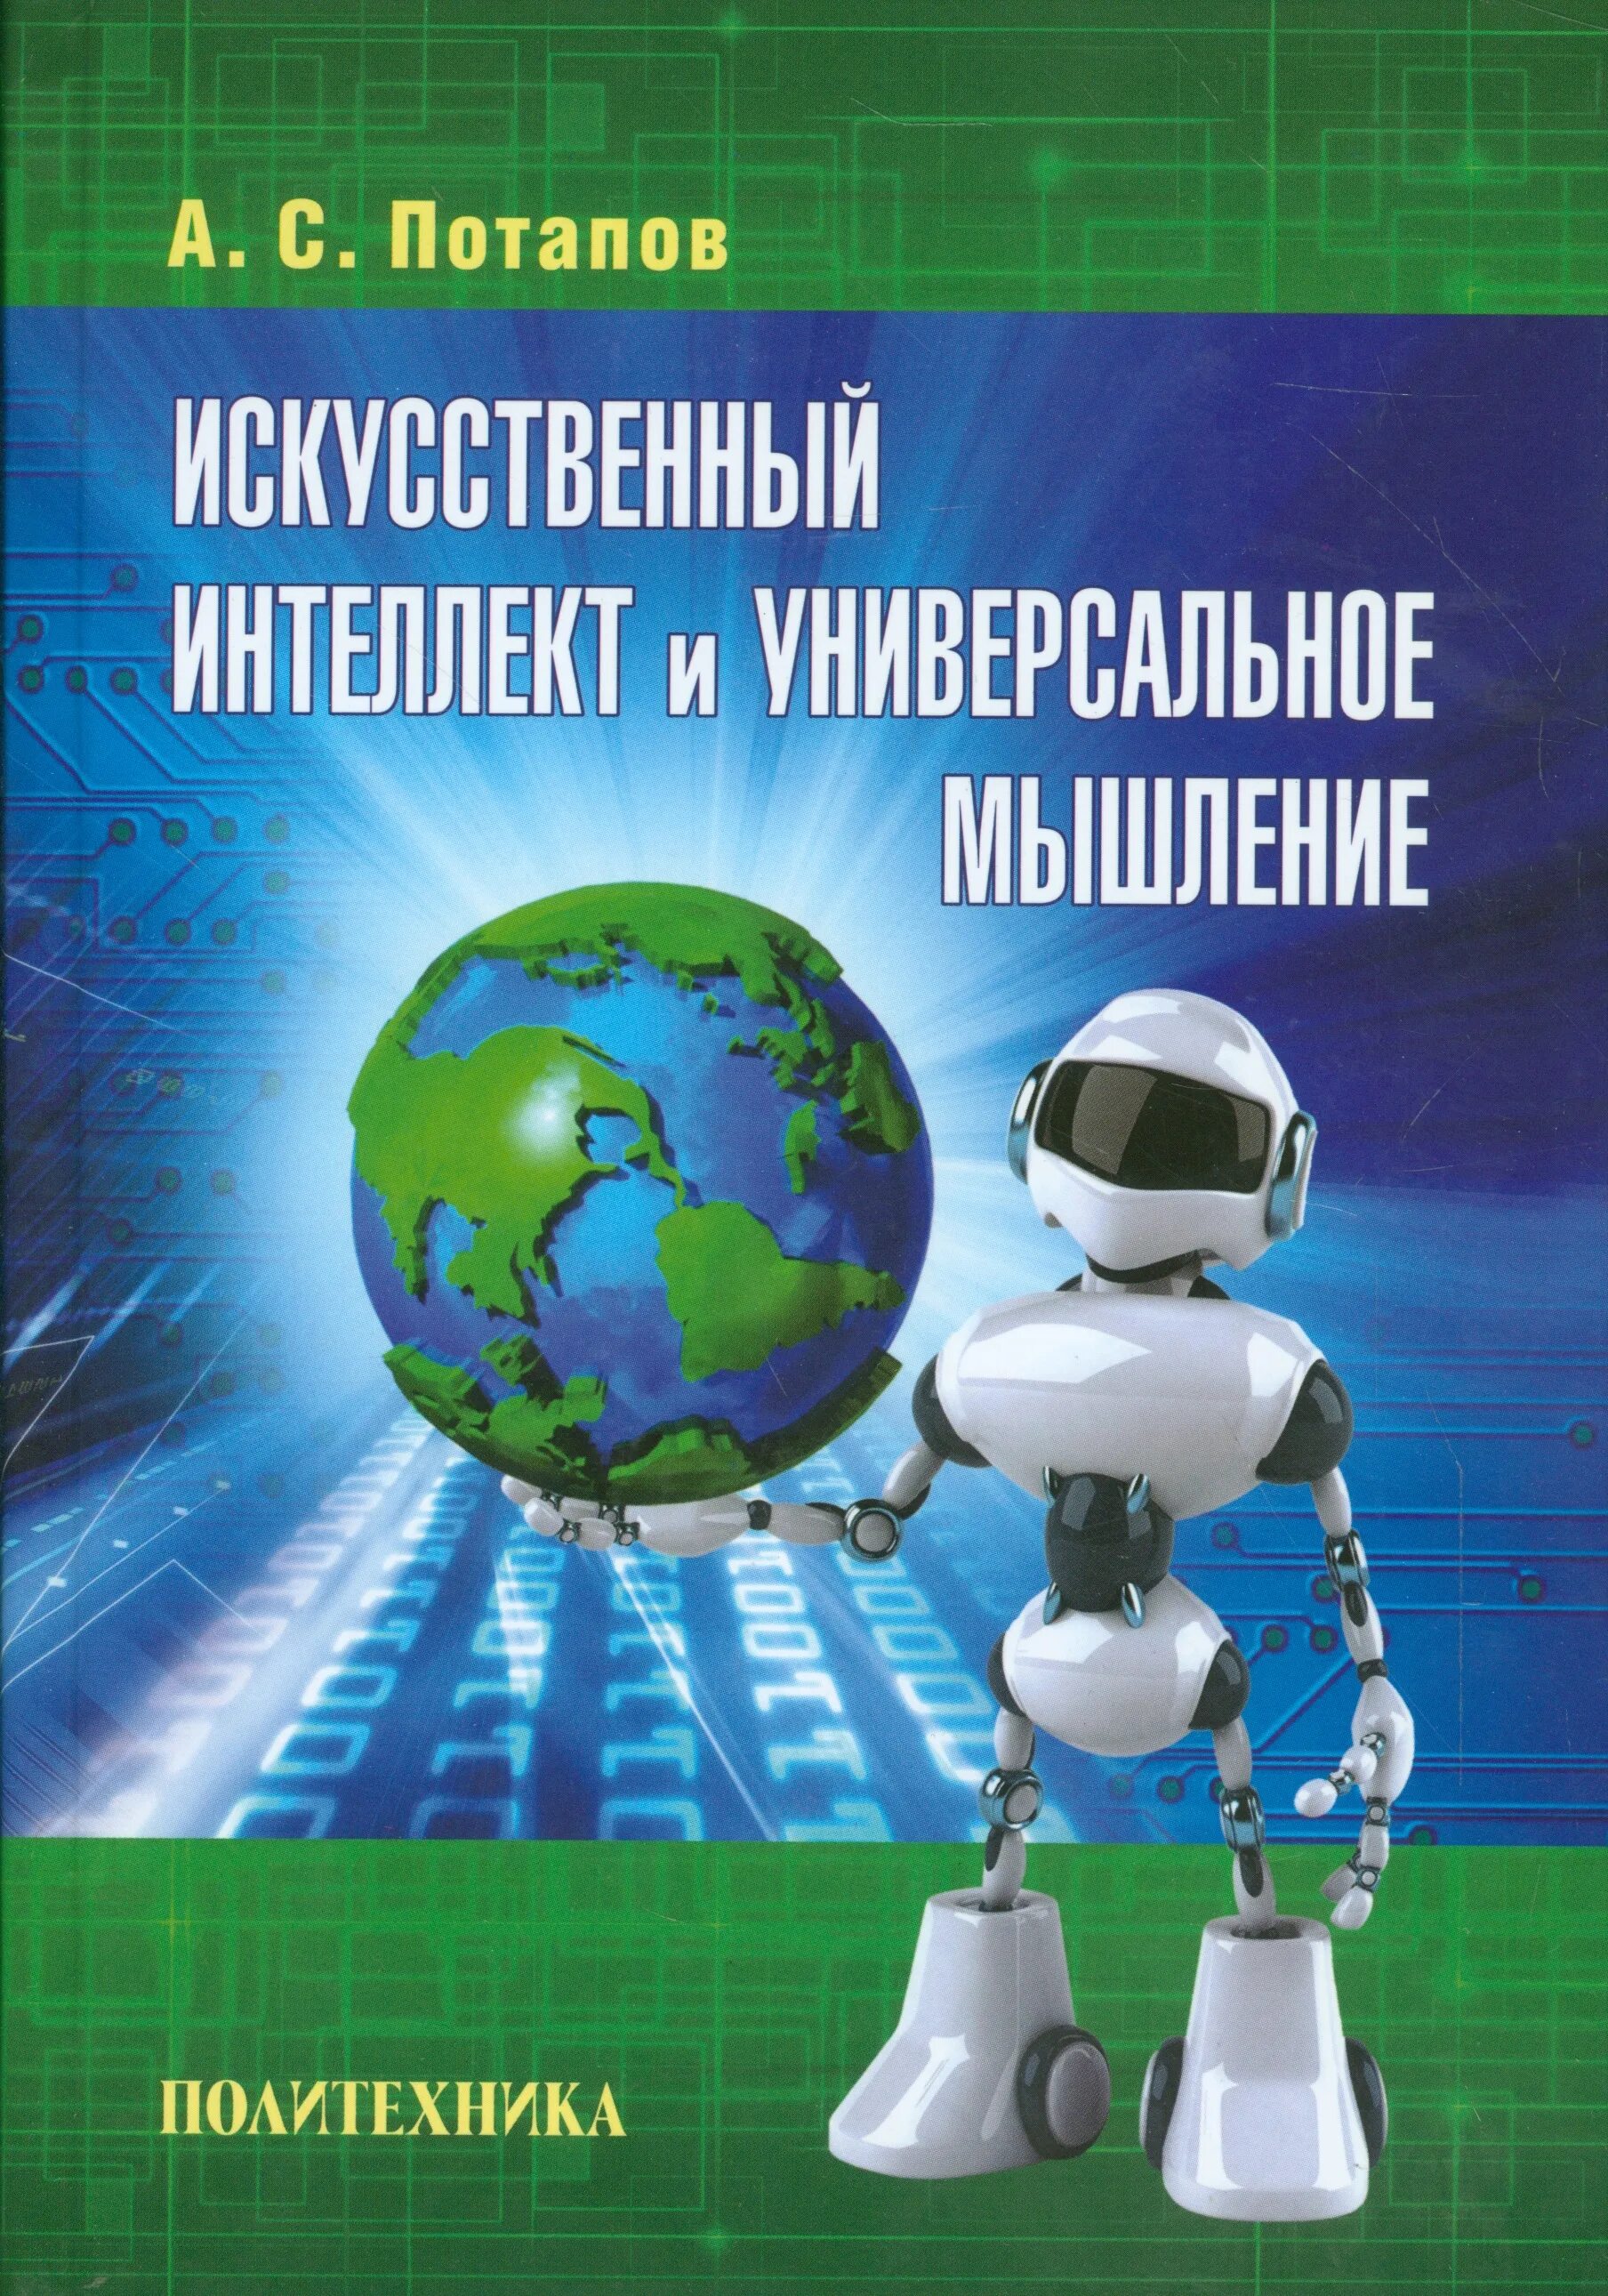 Книга искусственный интеллект. Книга искусственный интеллект ИИ. Факультет искусственного интеллекта. Потапов а.с. технологии искусственного интеллекта.